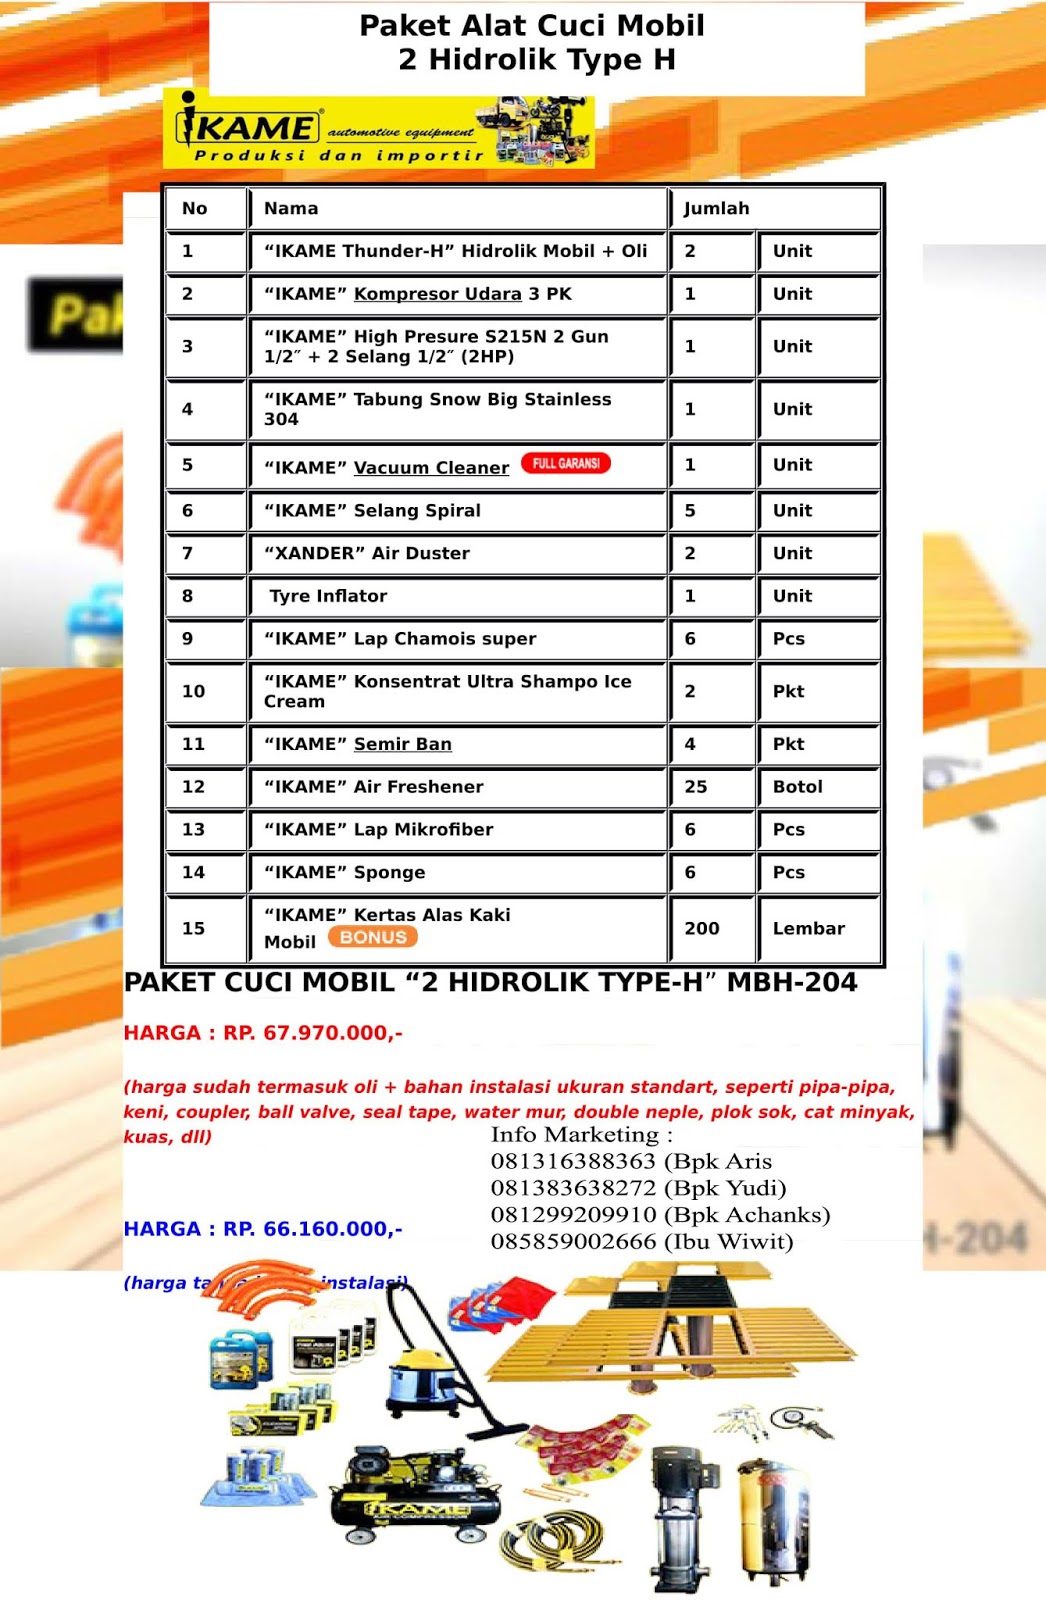 Ready Paket Cuci Mobil 2 Hidrolik Type H IKAME Plus Unit Lengkap Instalasi Brosur%2Bpaket%2B2%2Bhidrolik-1%2Bcopy